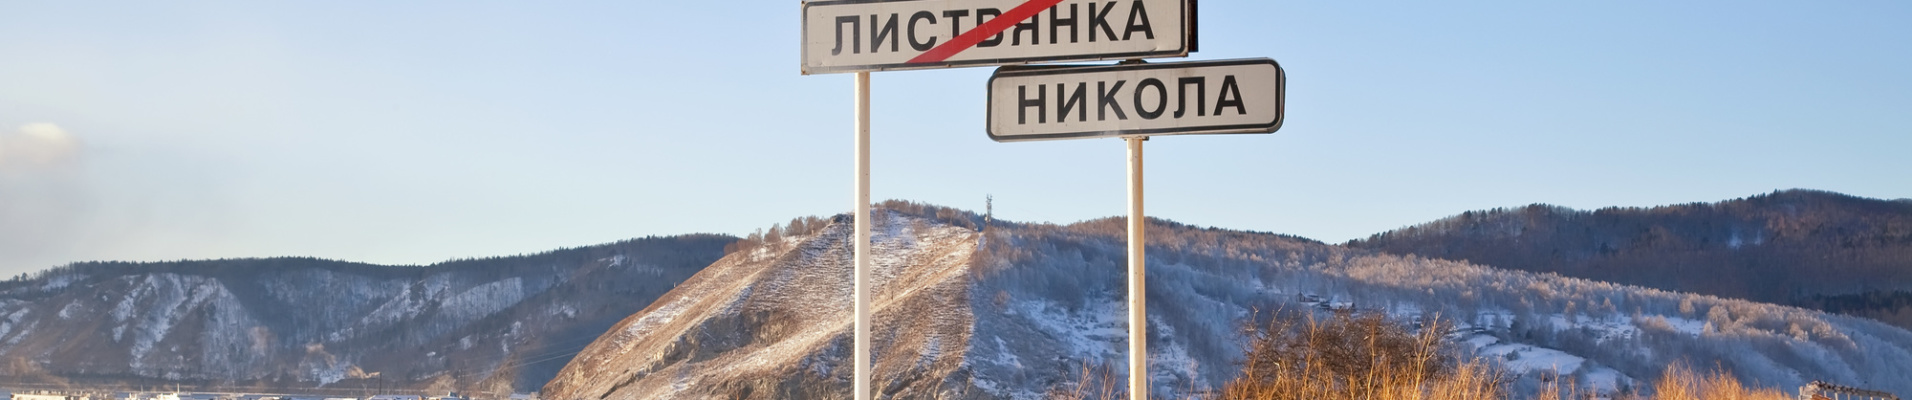 Panneau sur la route, Russie